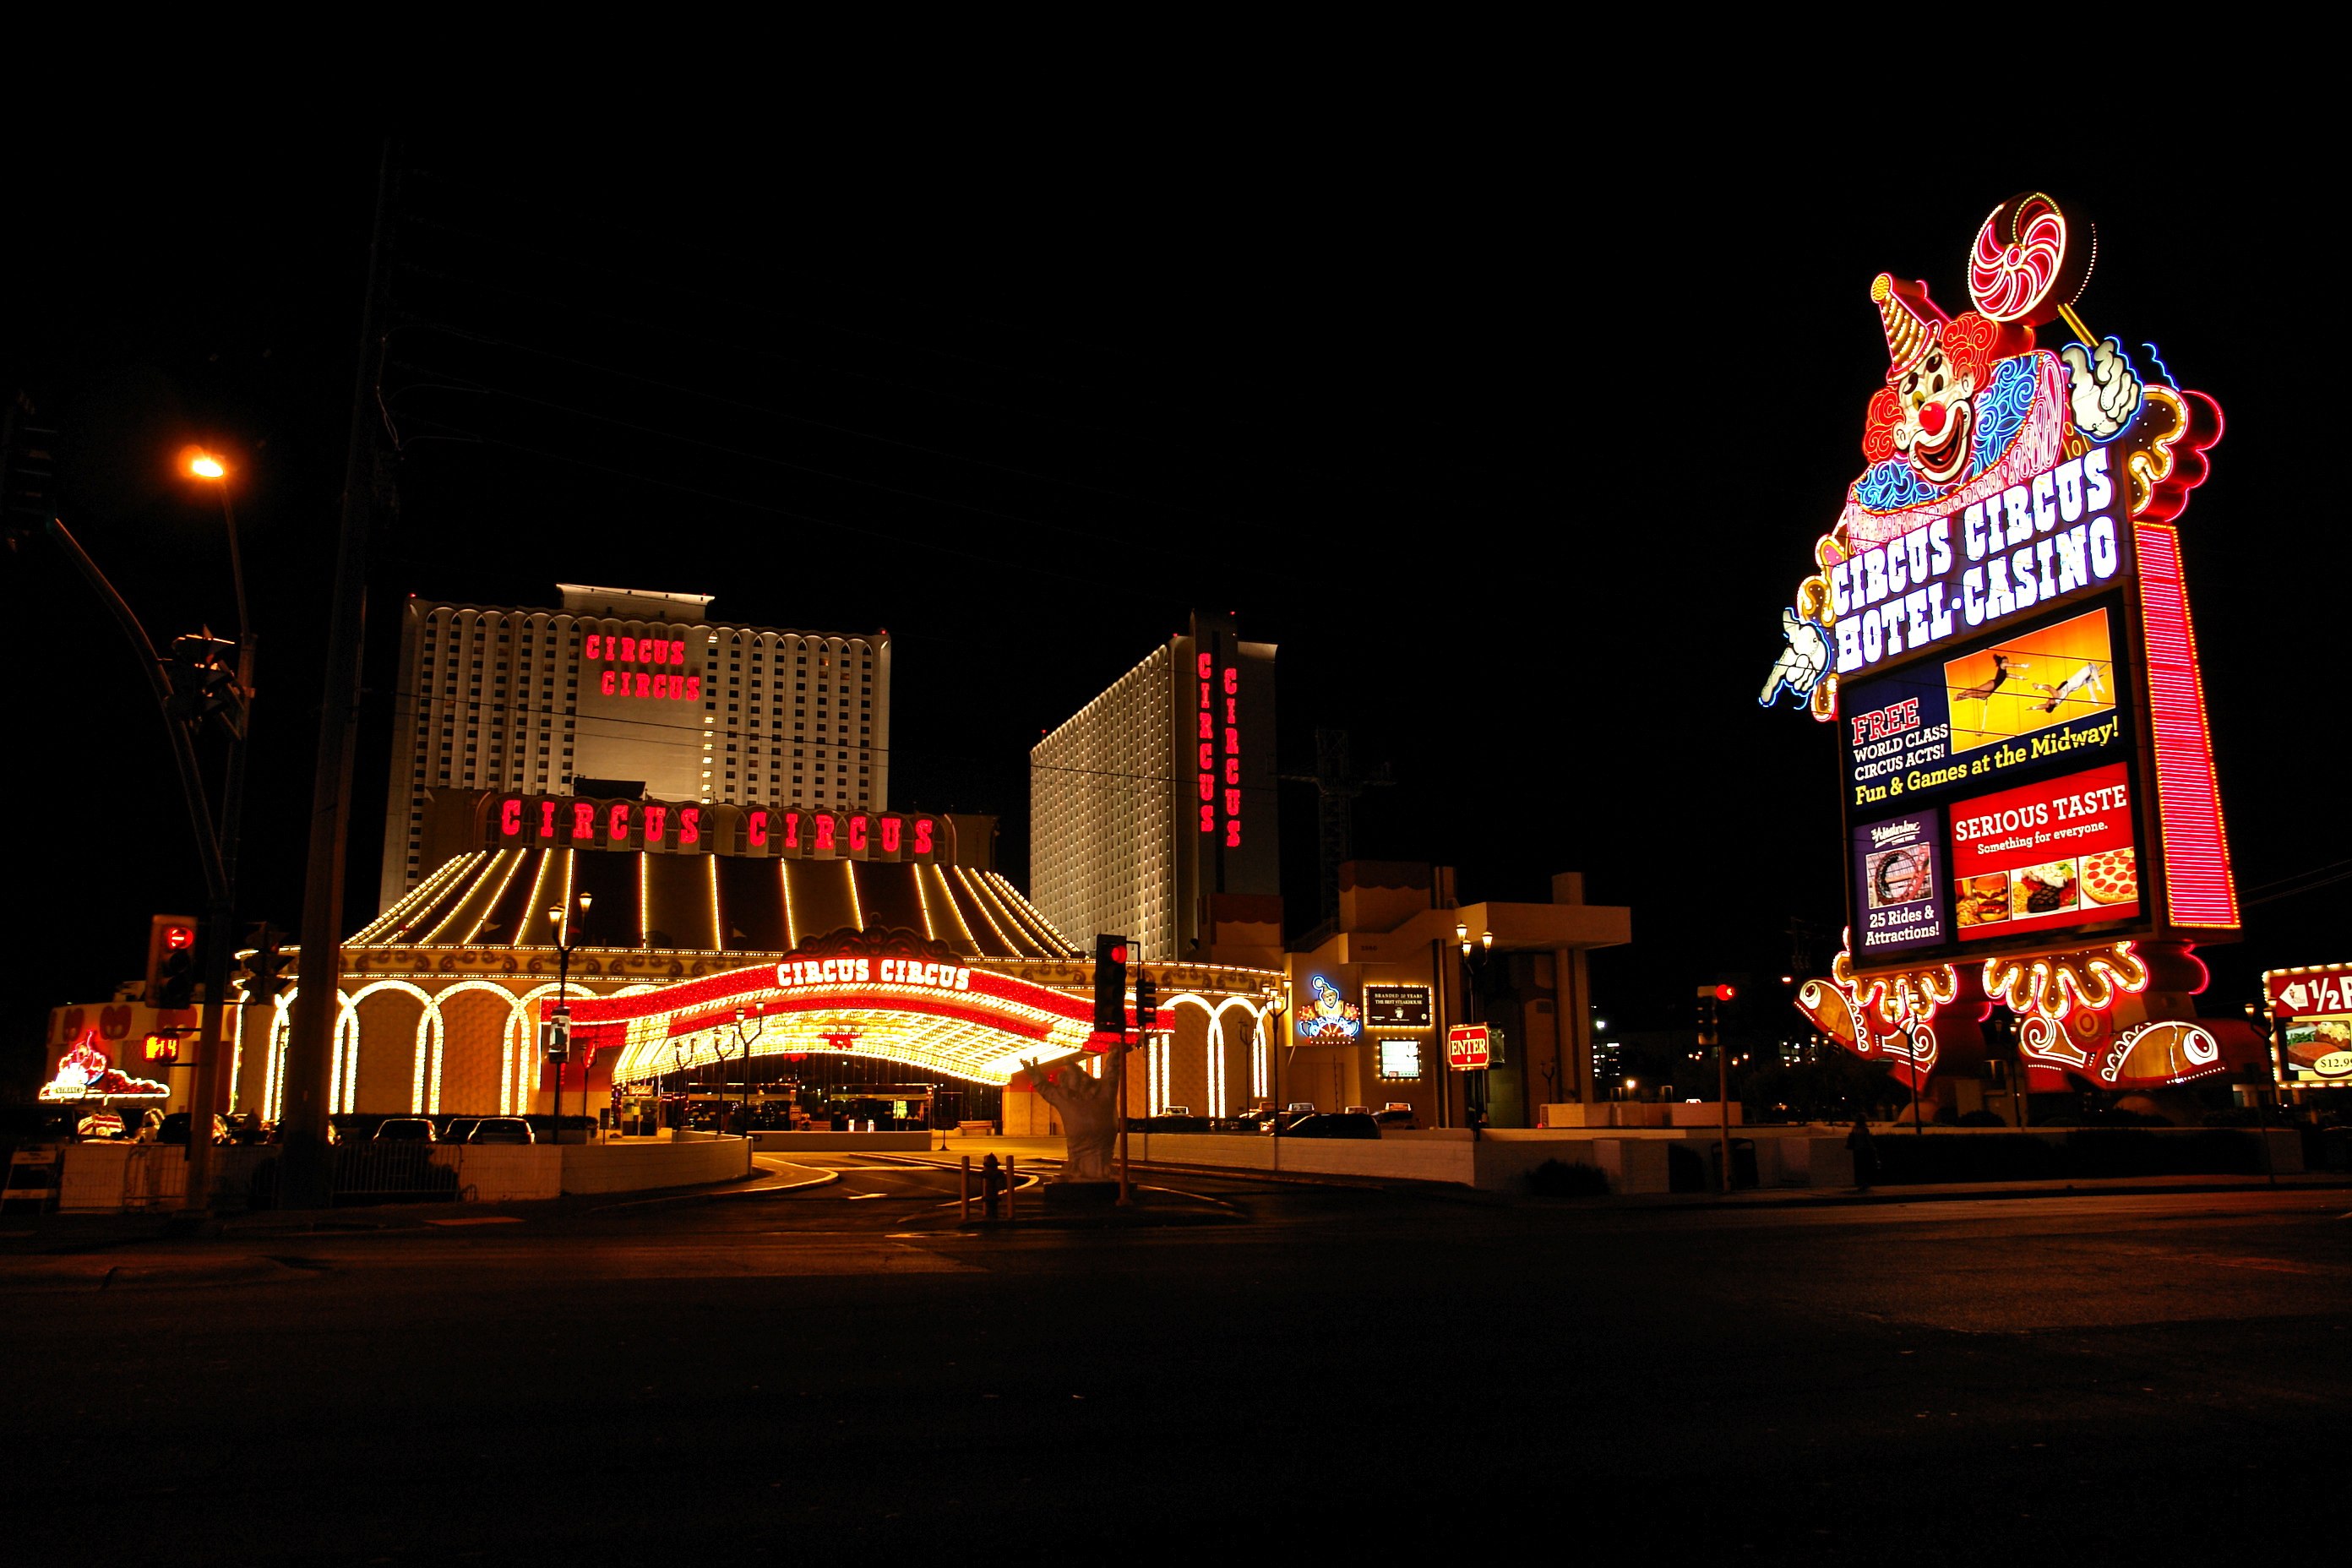 Vegas Circus Circus